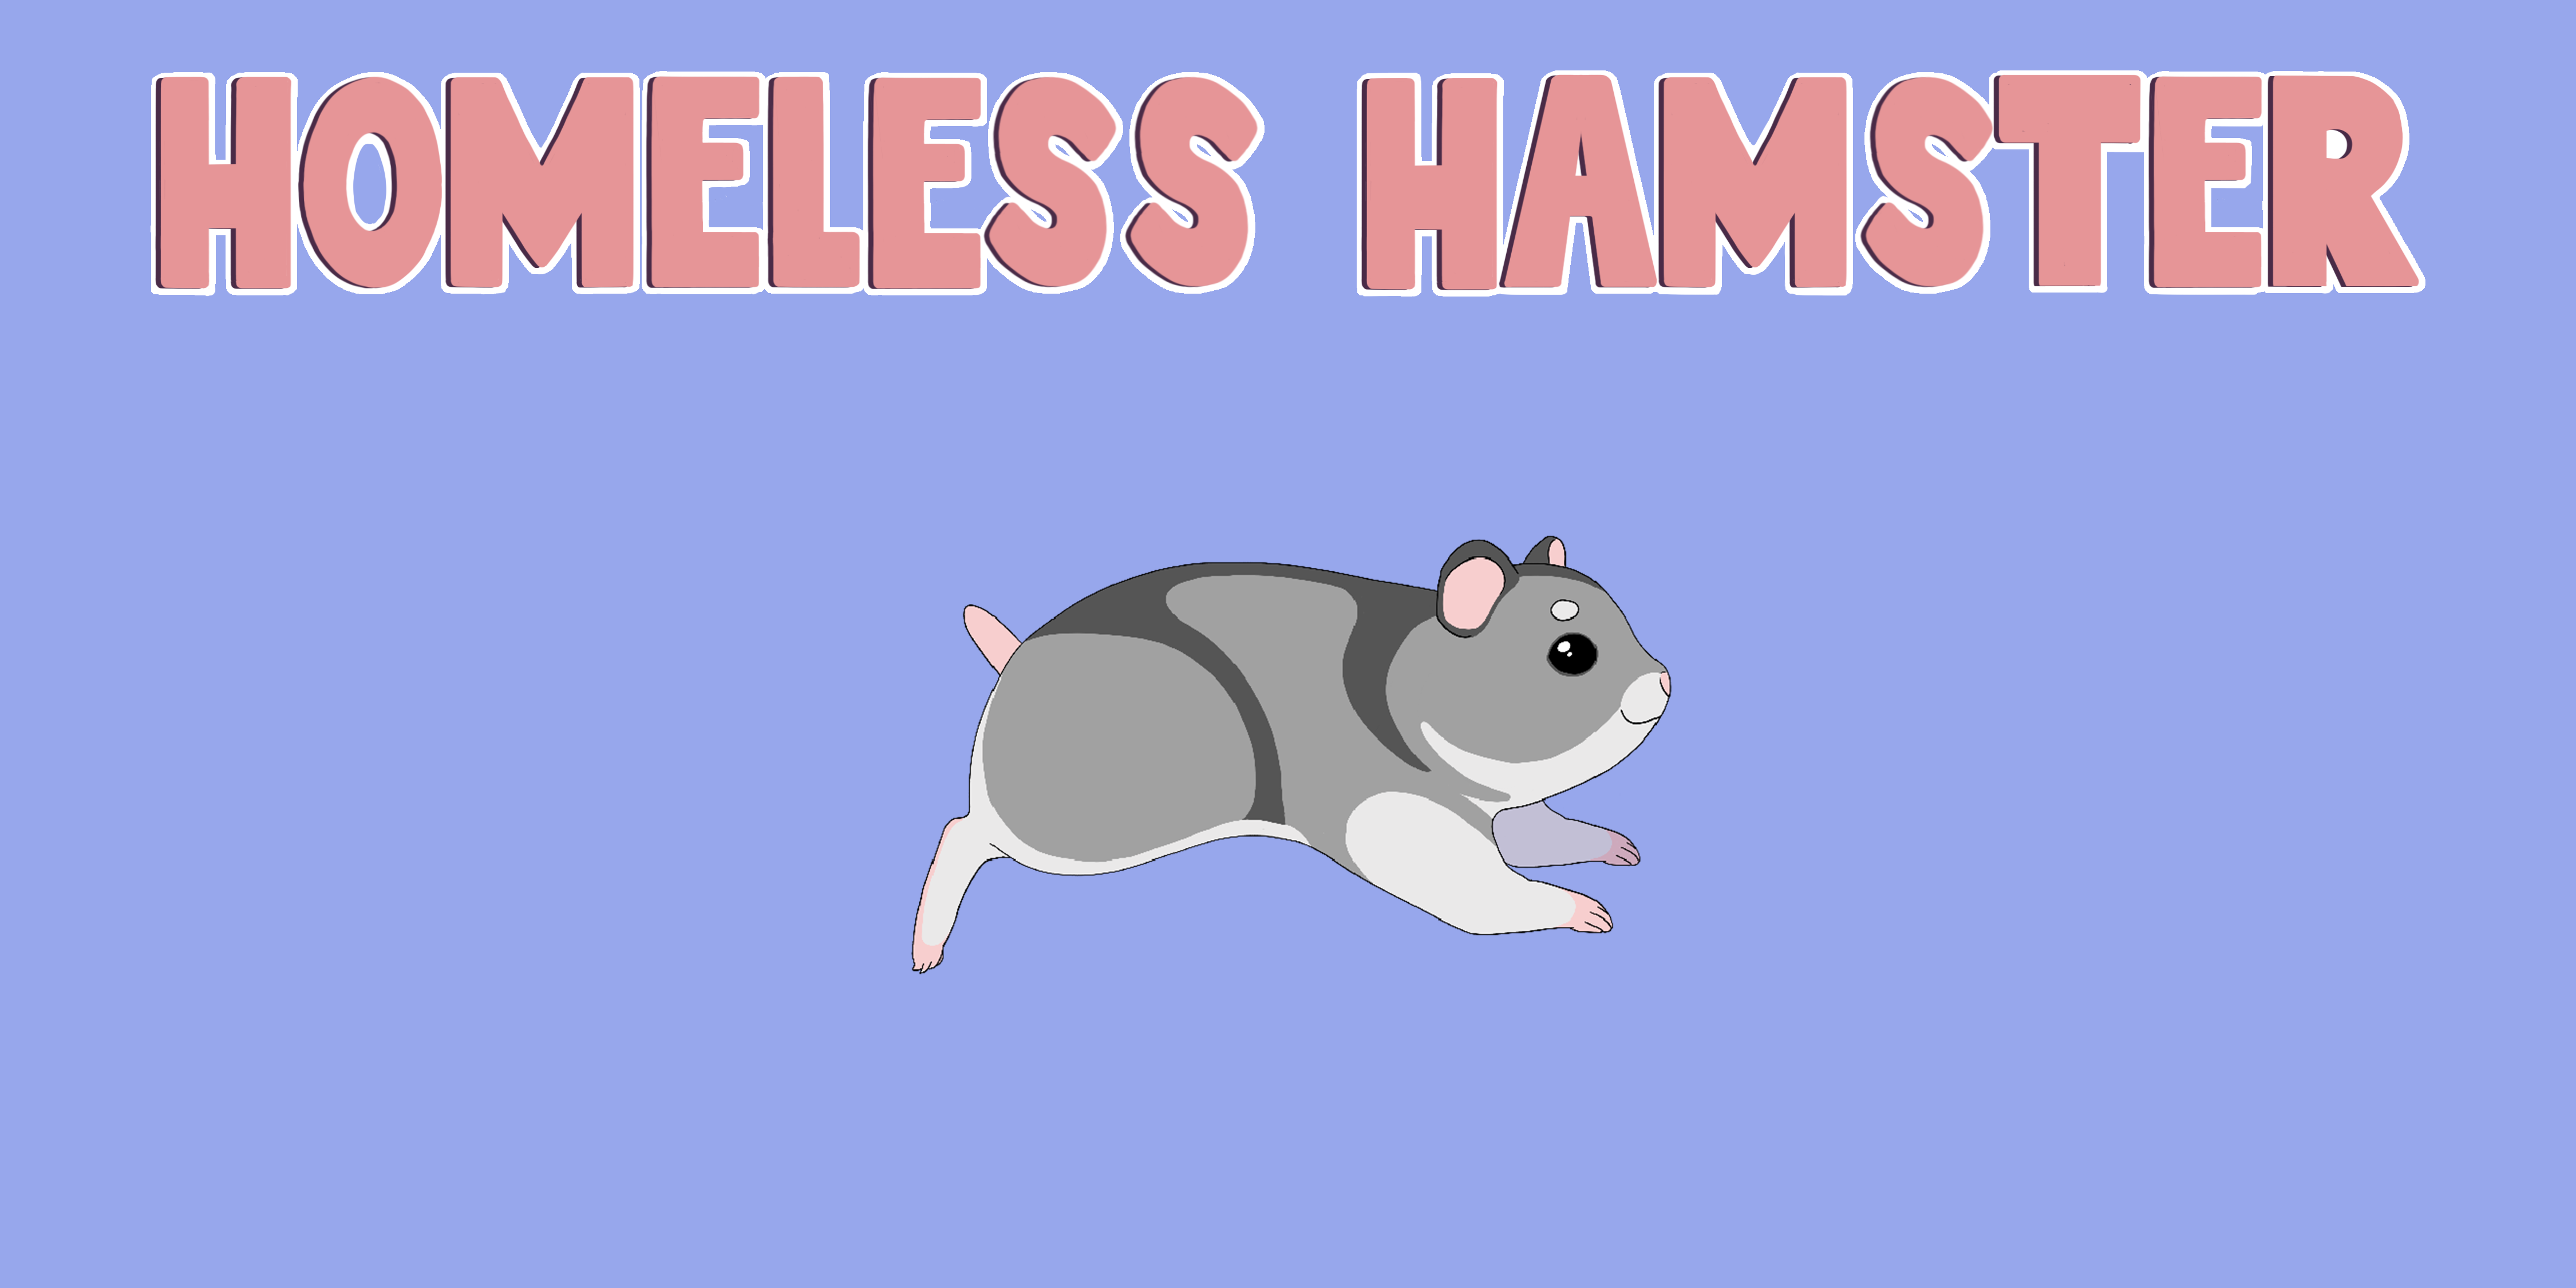 Homeless Hamster